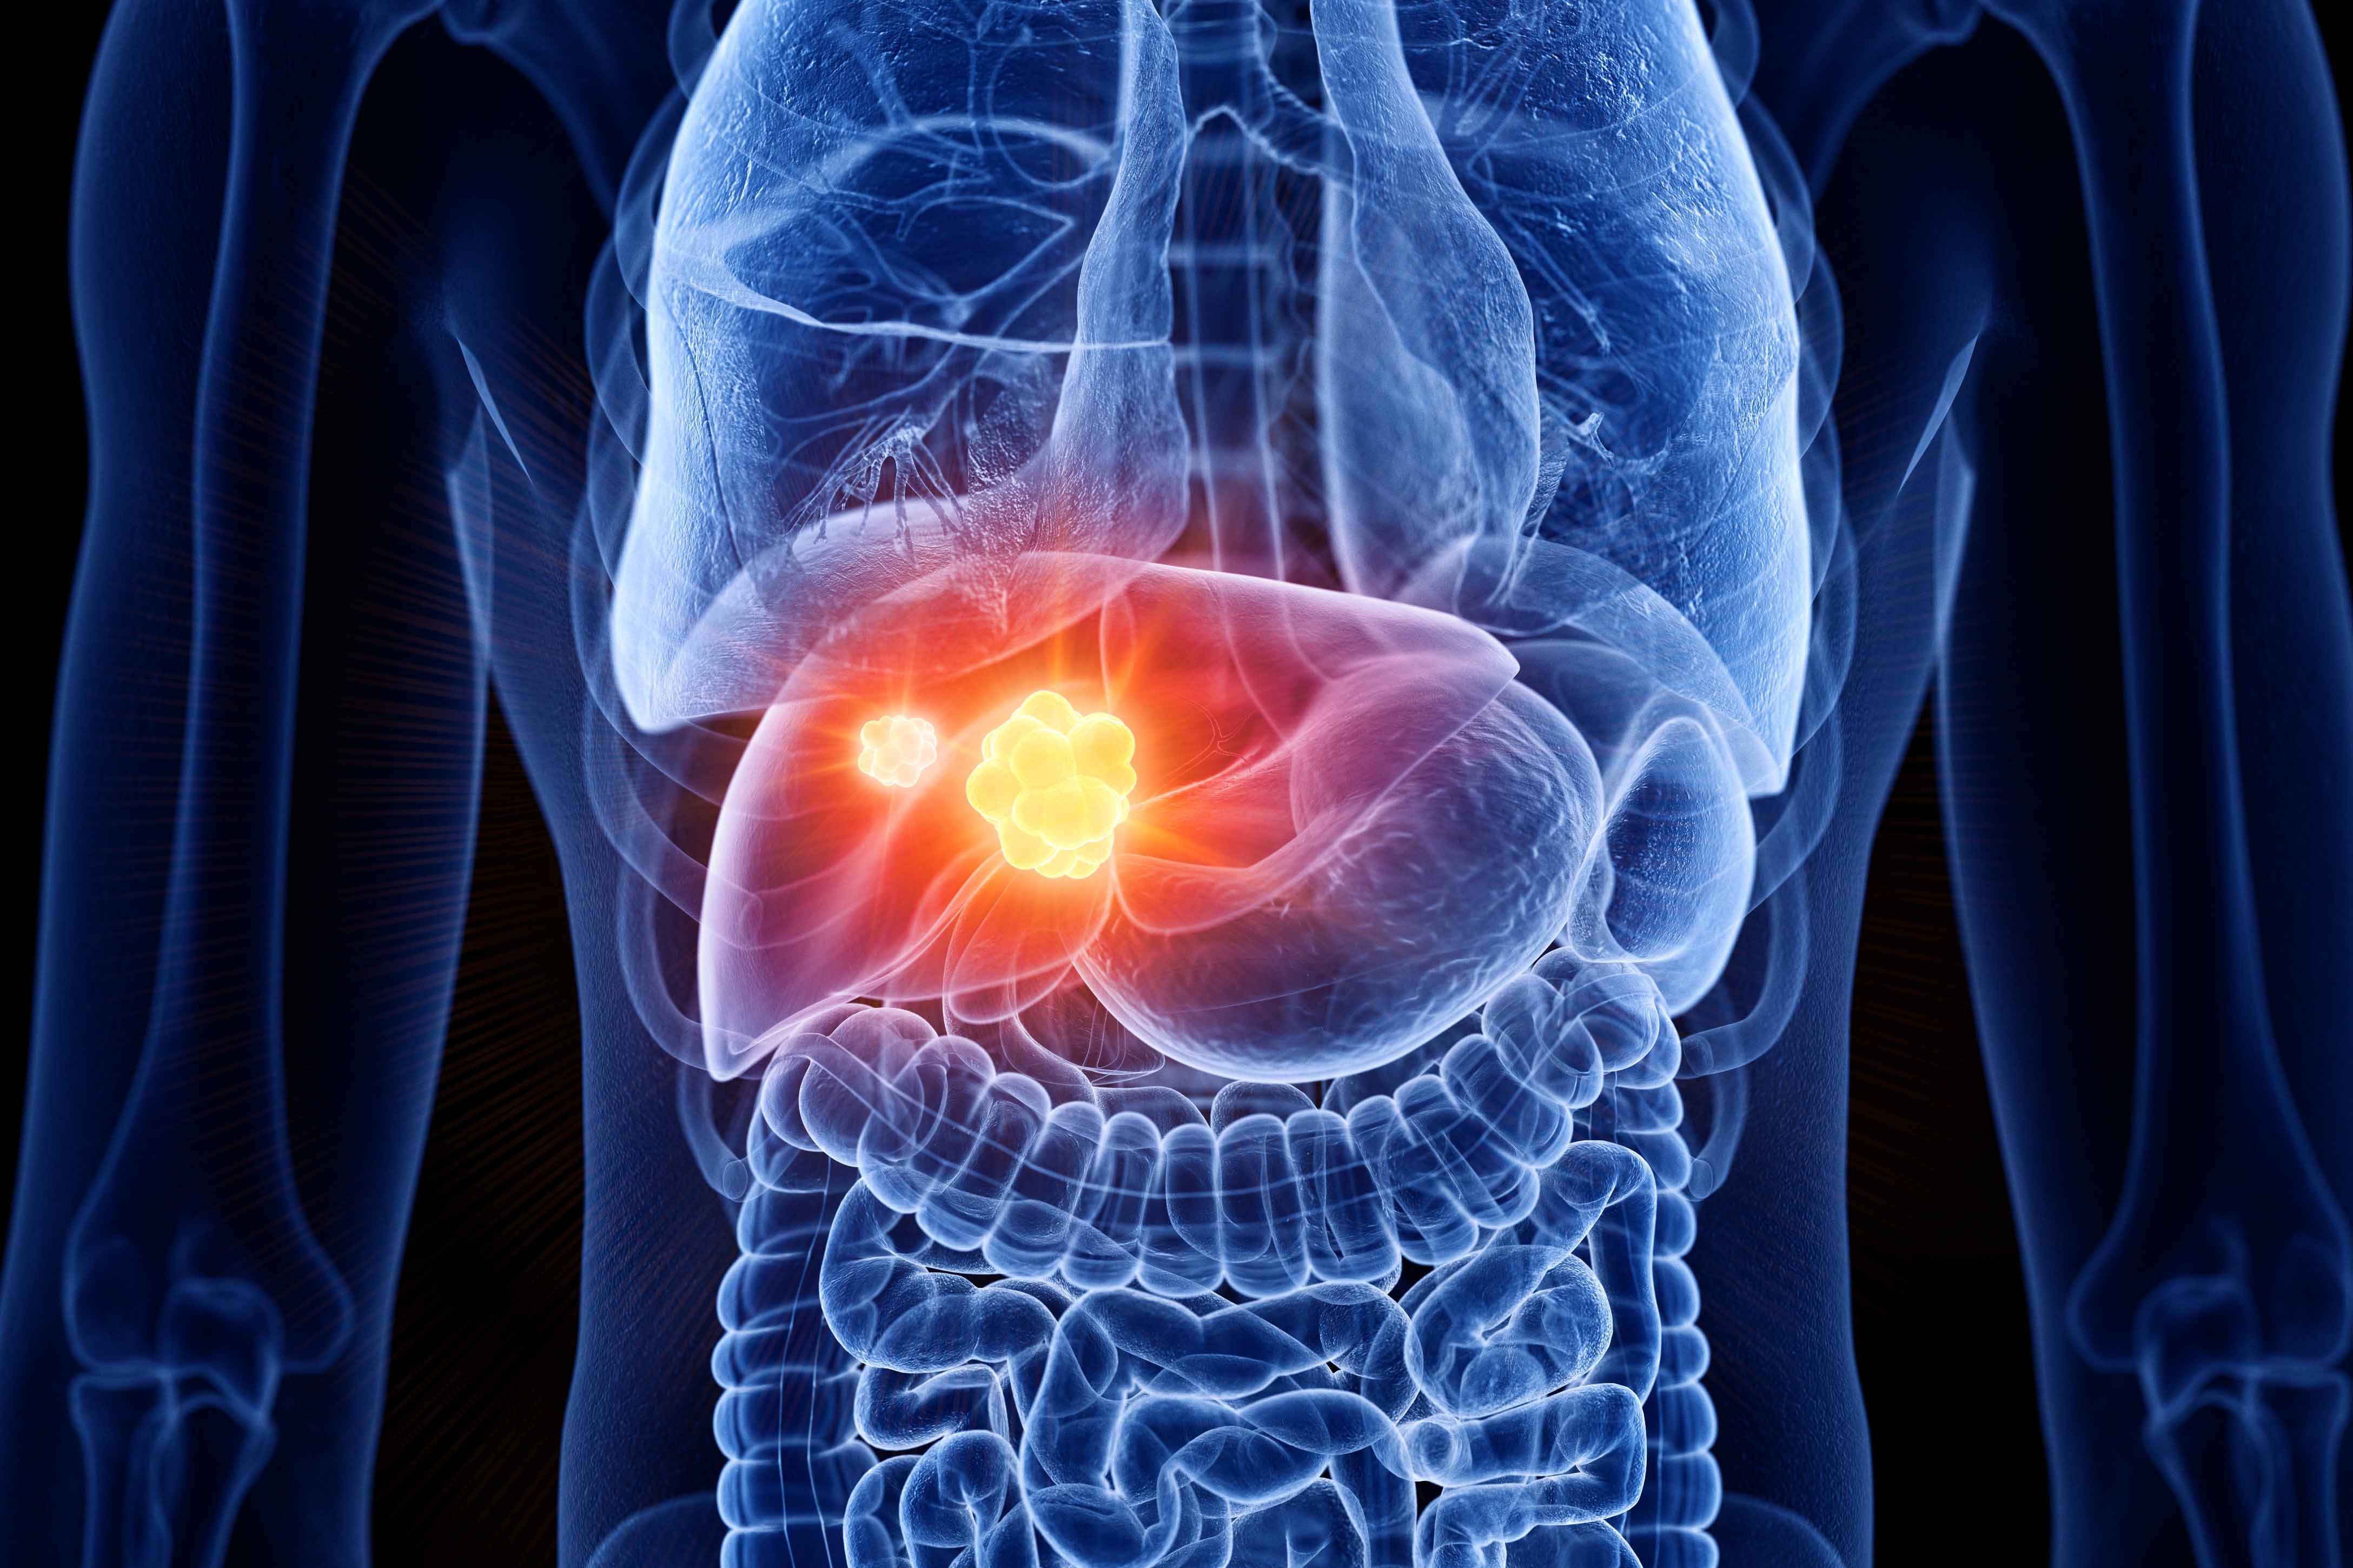 liver cancer symptoms